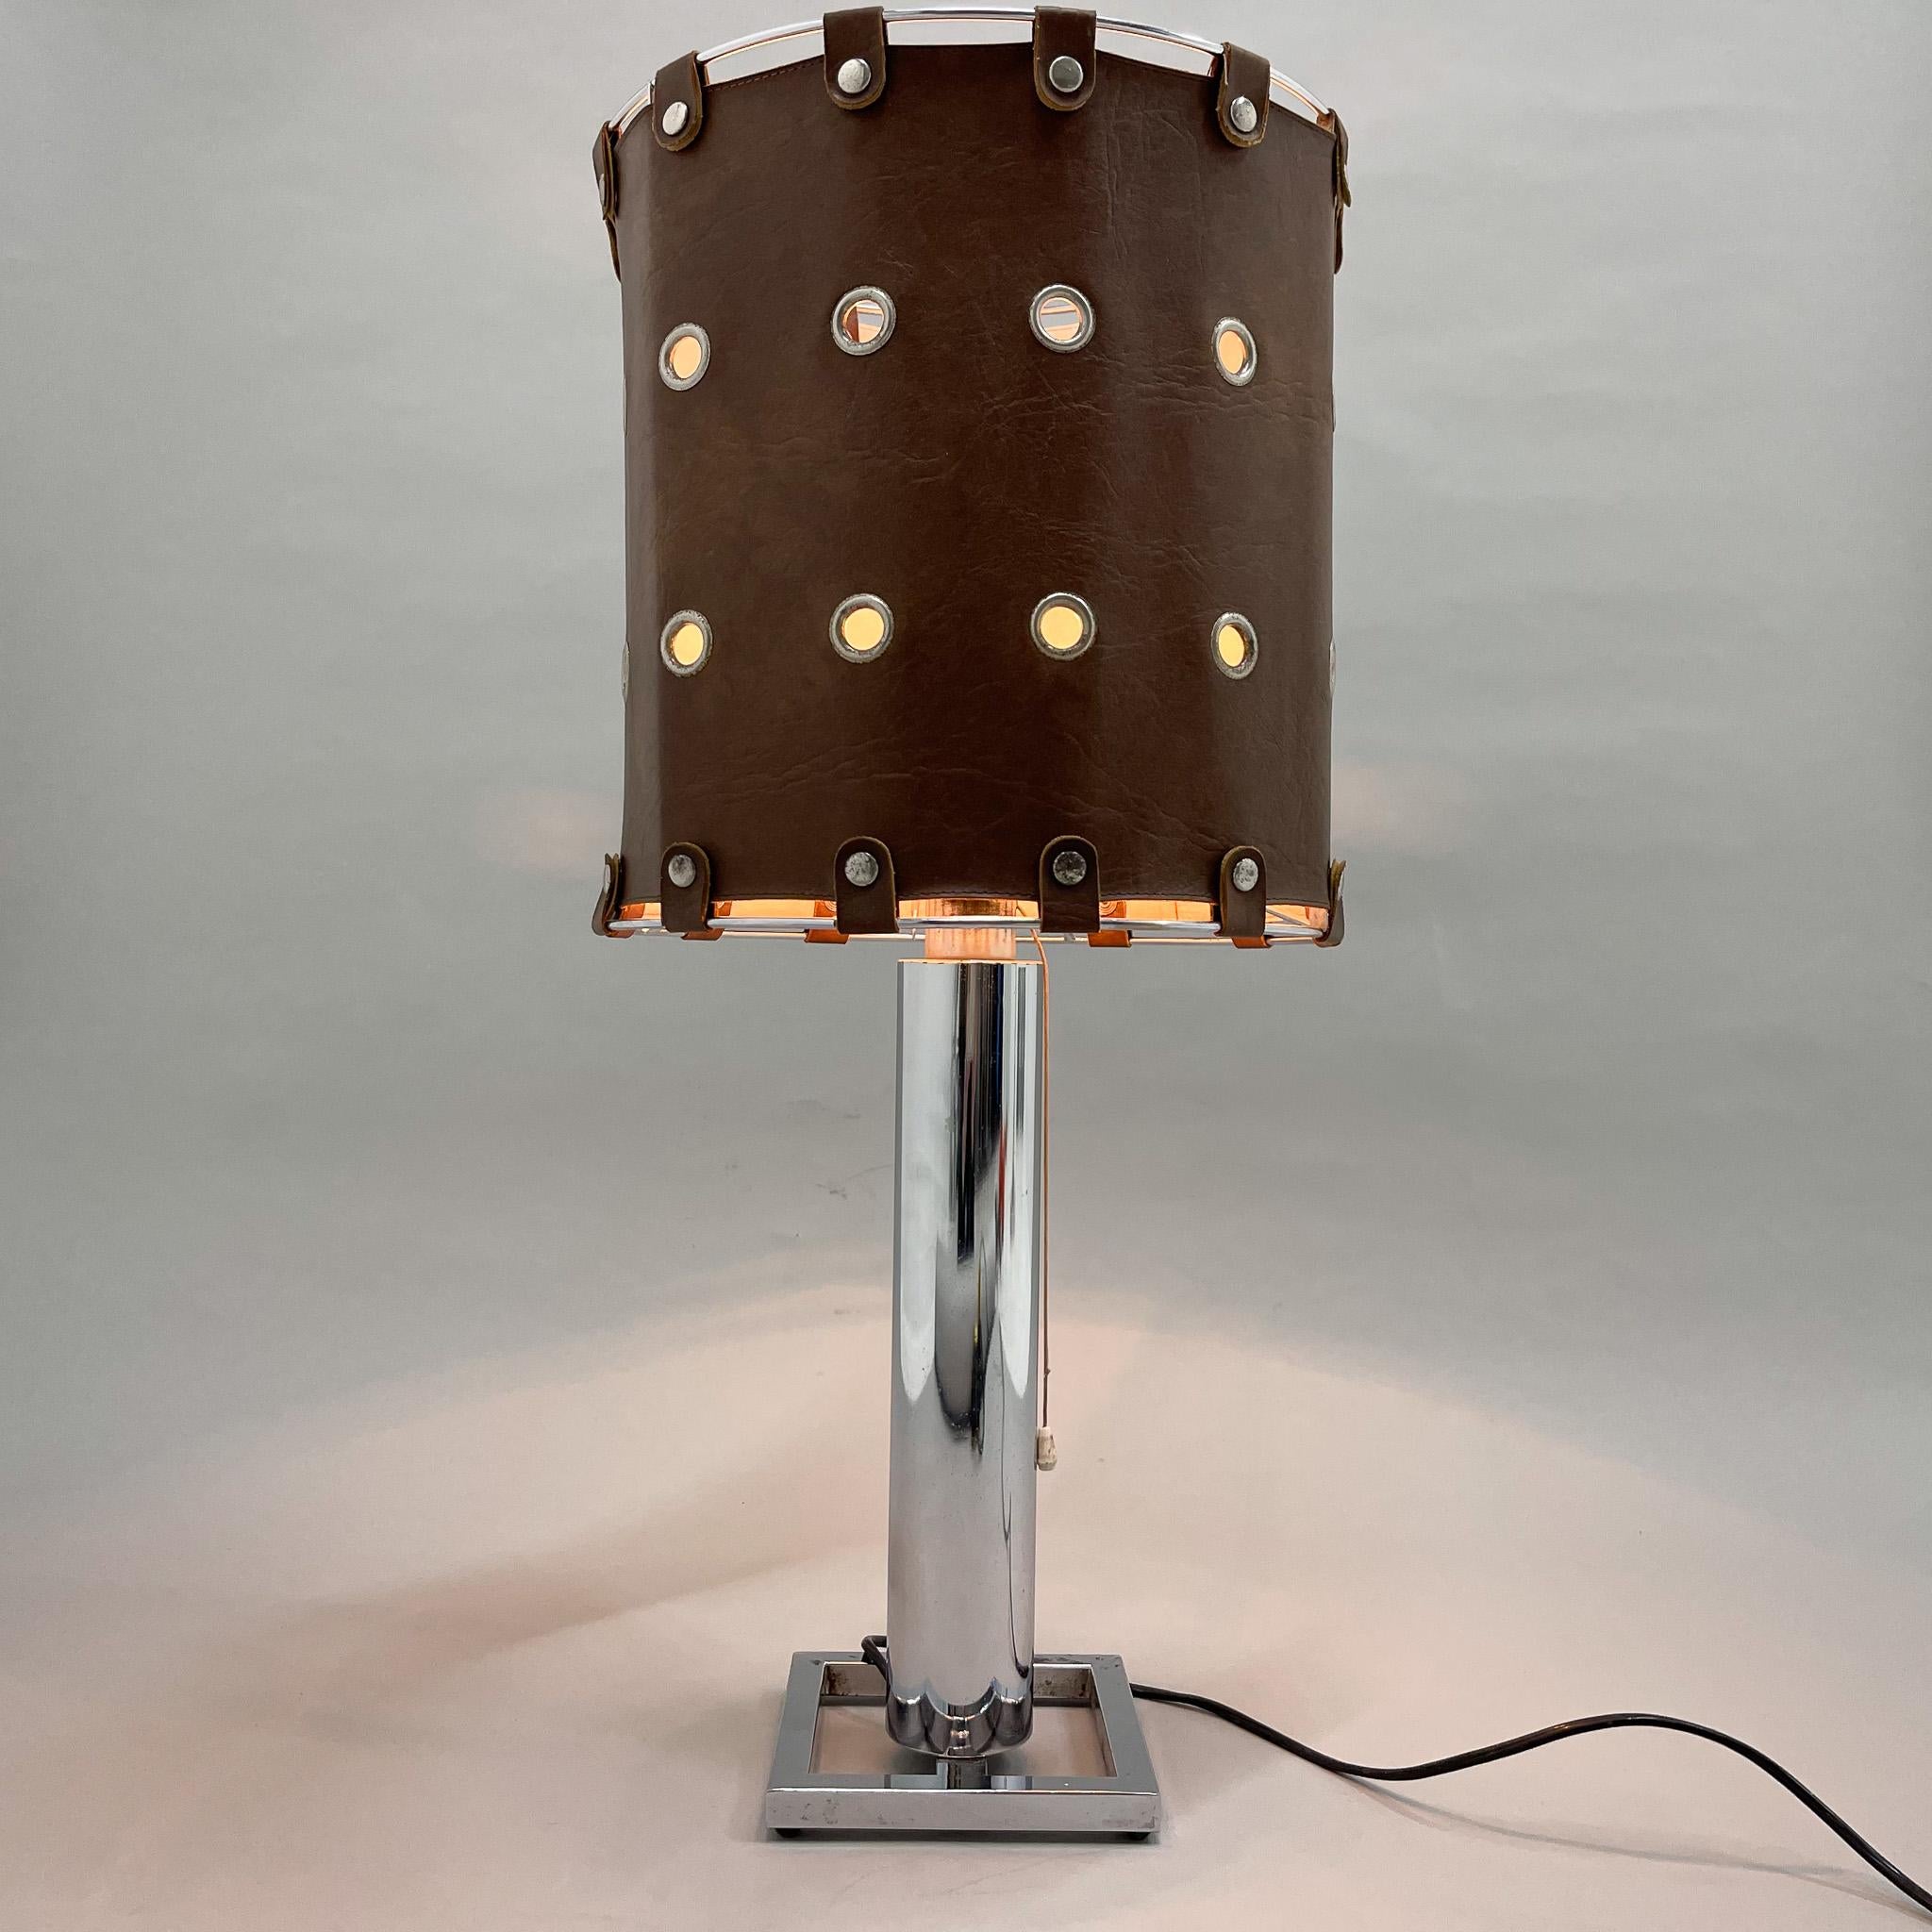 Une lampe de table très inhabituelle composée d'une base chromée et d'un abat-jour en cuir véritable. Fabriqué en Italie dans les années 1950. En bon état vintage avec quelques signes d'usure, voir photo. 
Ampoule : 1 x E25-E27.